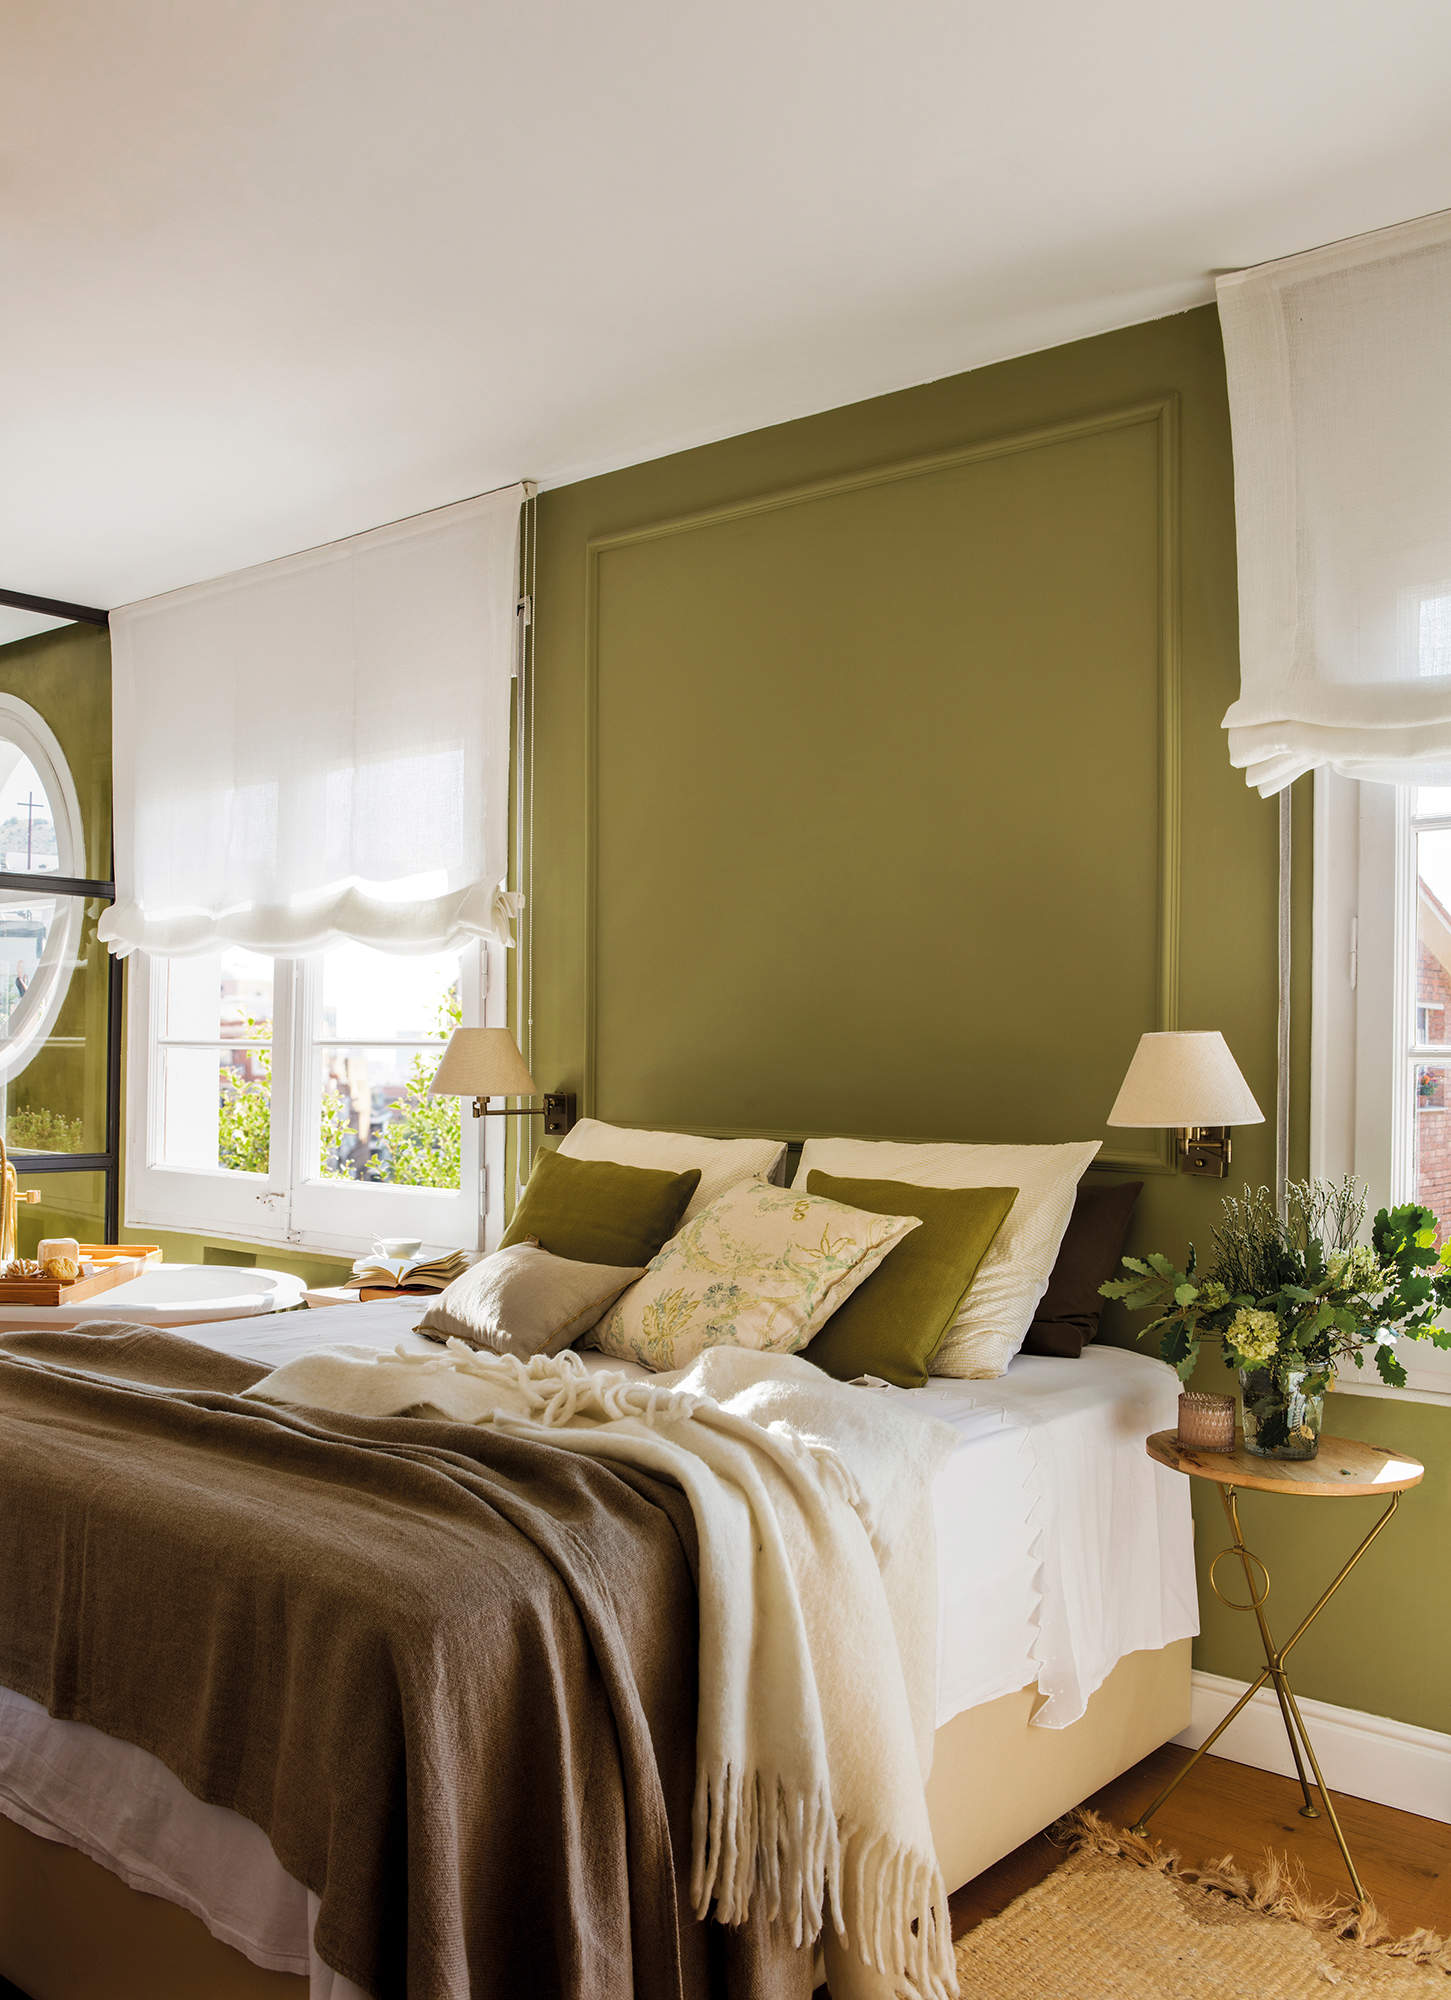 Dormitorio con paredes pintadas en color verde 00562640